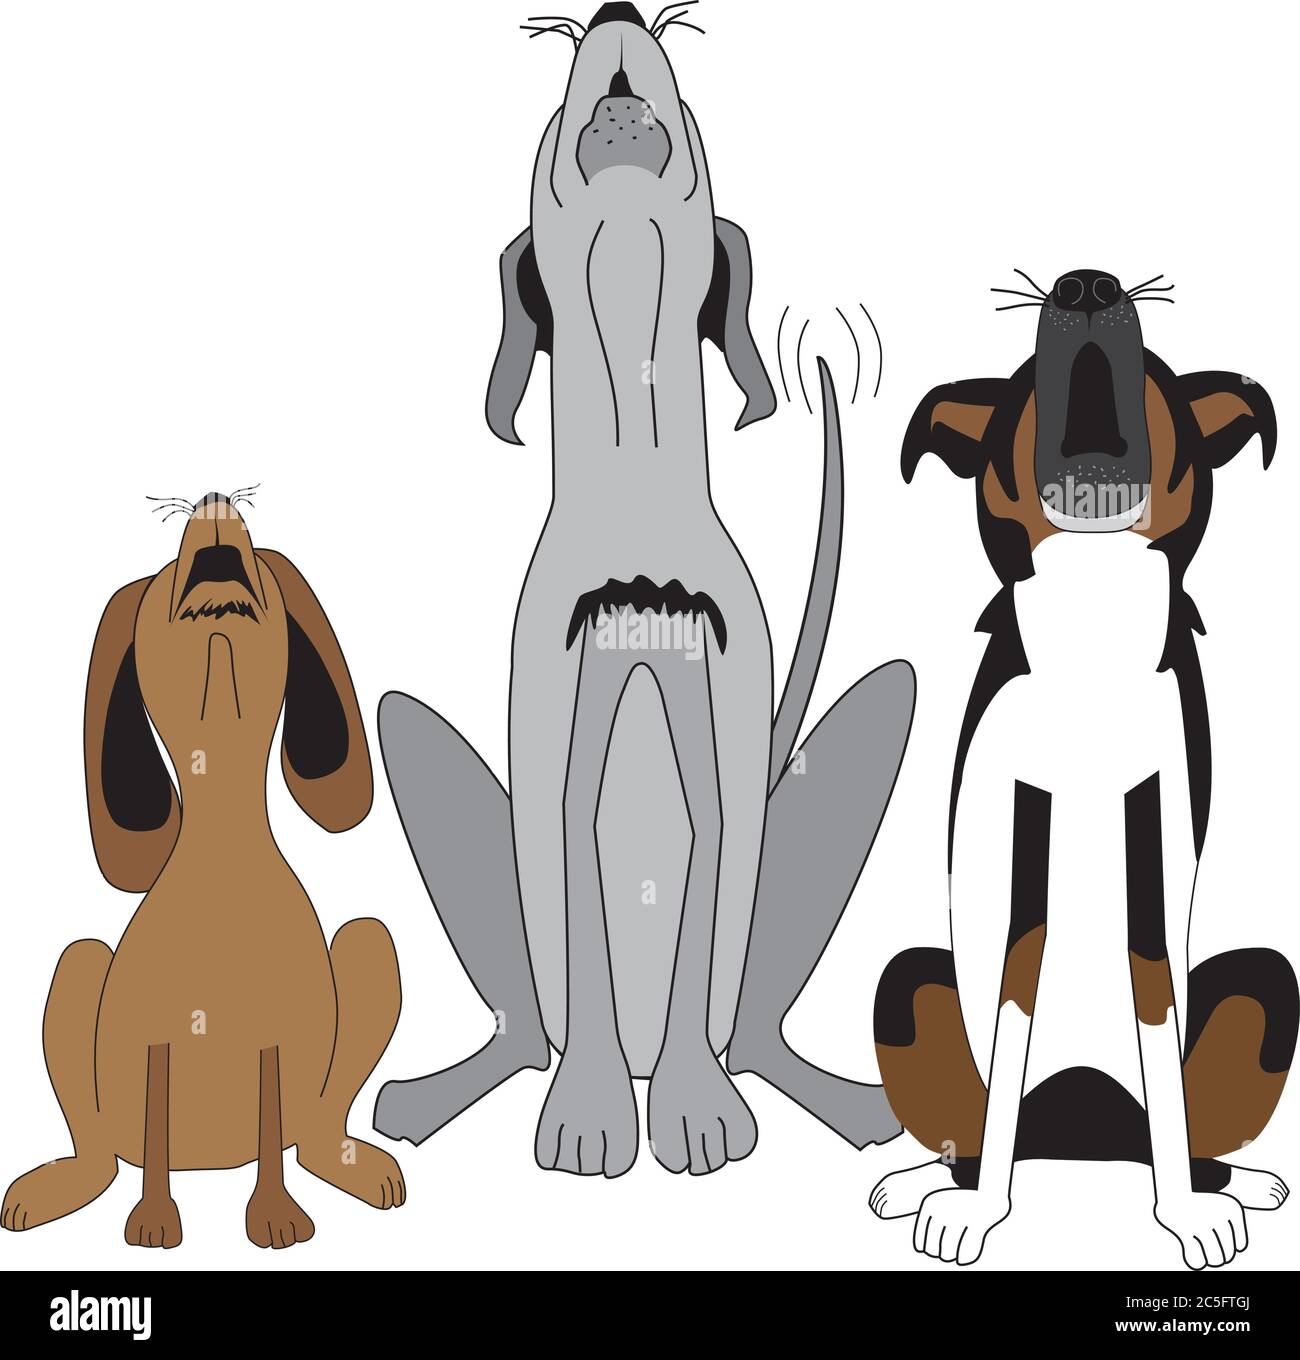 Caricature humoristique de trois chiens assis dans une rangée avec leurs têtes ont fait des aboiements, chantant ou hurlant bruyamment. Illustration de Vecteur